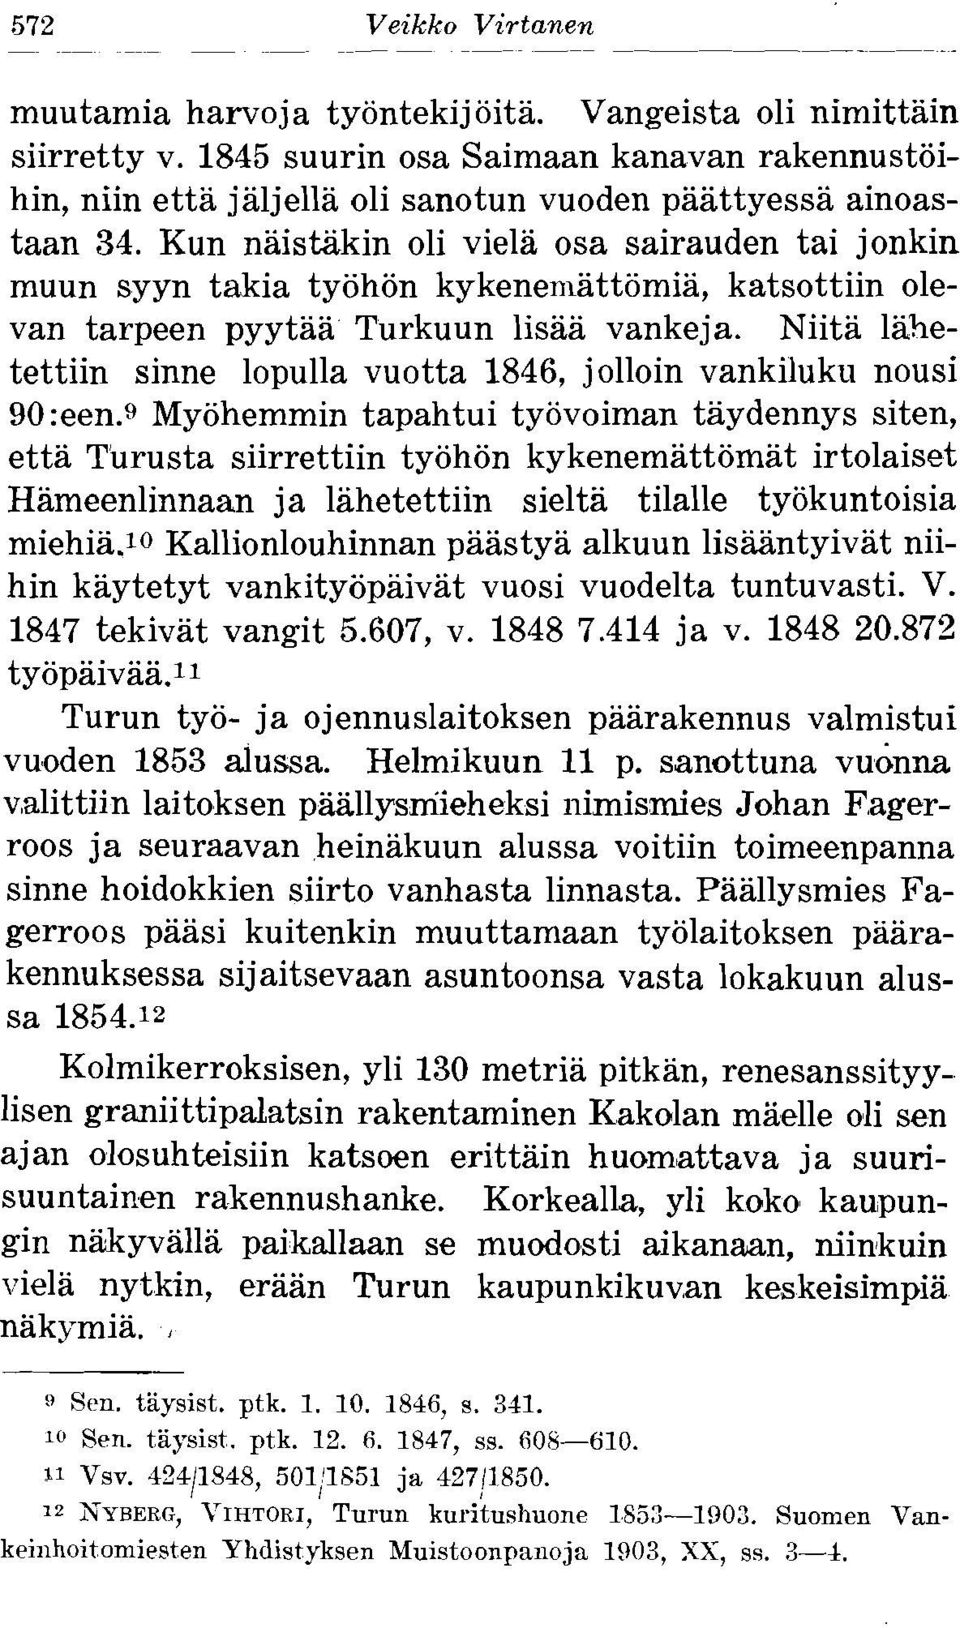 Kun naistzikin oli viela osa sairauden tai jonkin muun syyn takia tyohon kykenemattomia, katsottiin olevan tarpeen pyytaa Turkuun lisaa vankeja.